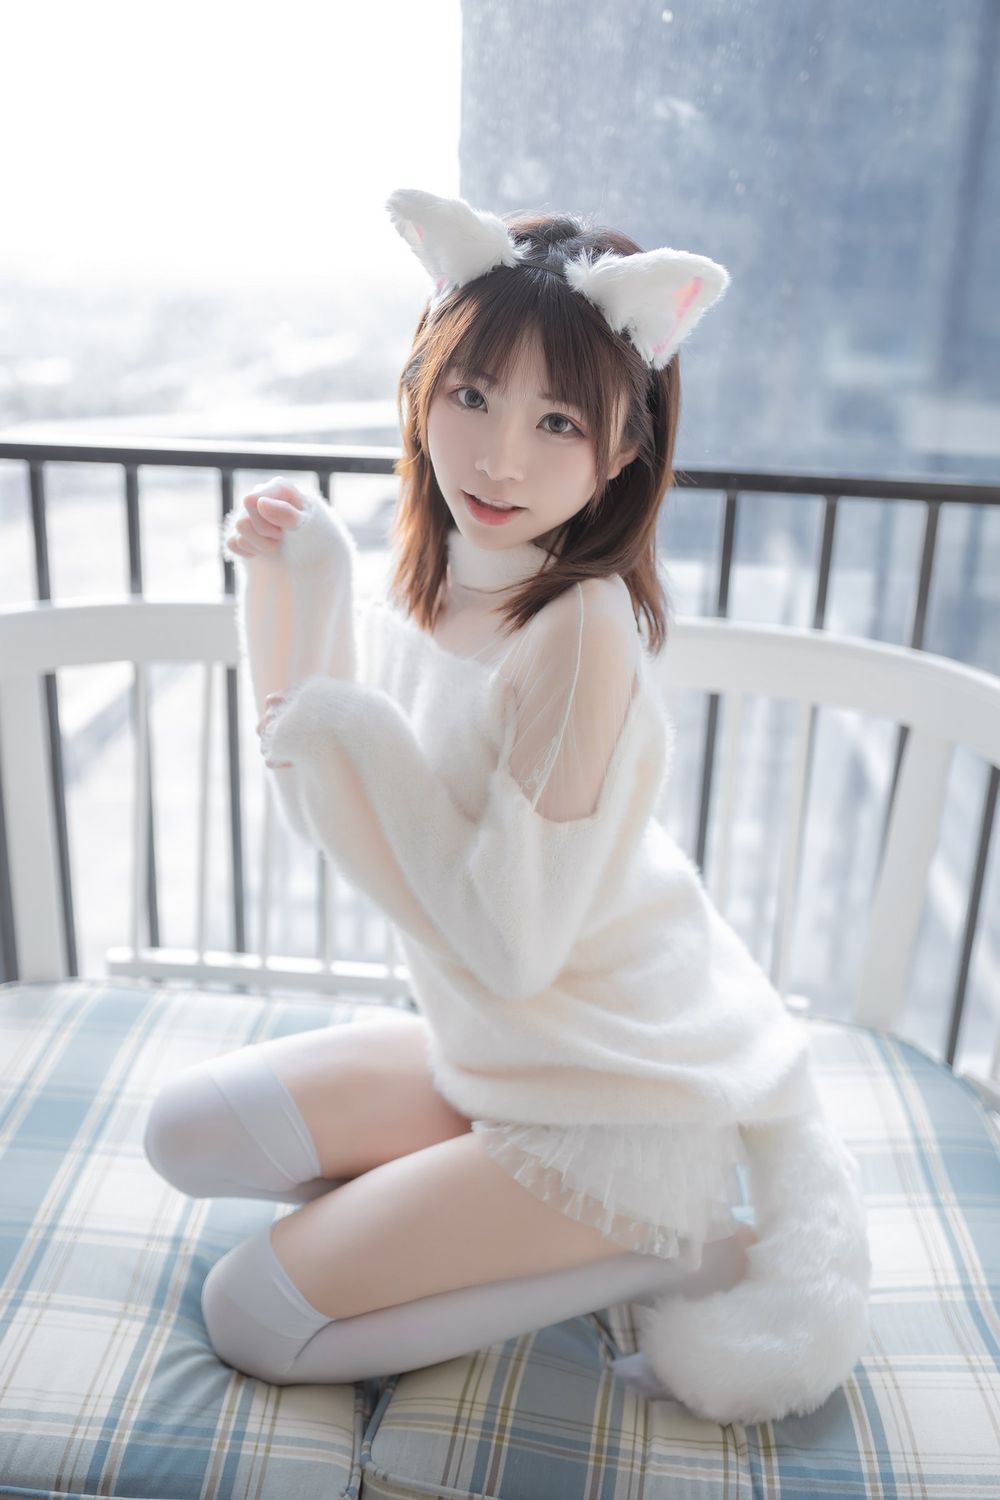 动漫博主Kitaro绮太郎纯白绒毛服饰白喵女友兔女郎主题写真